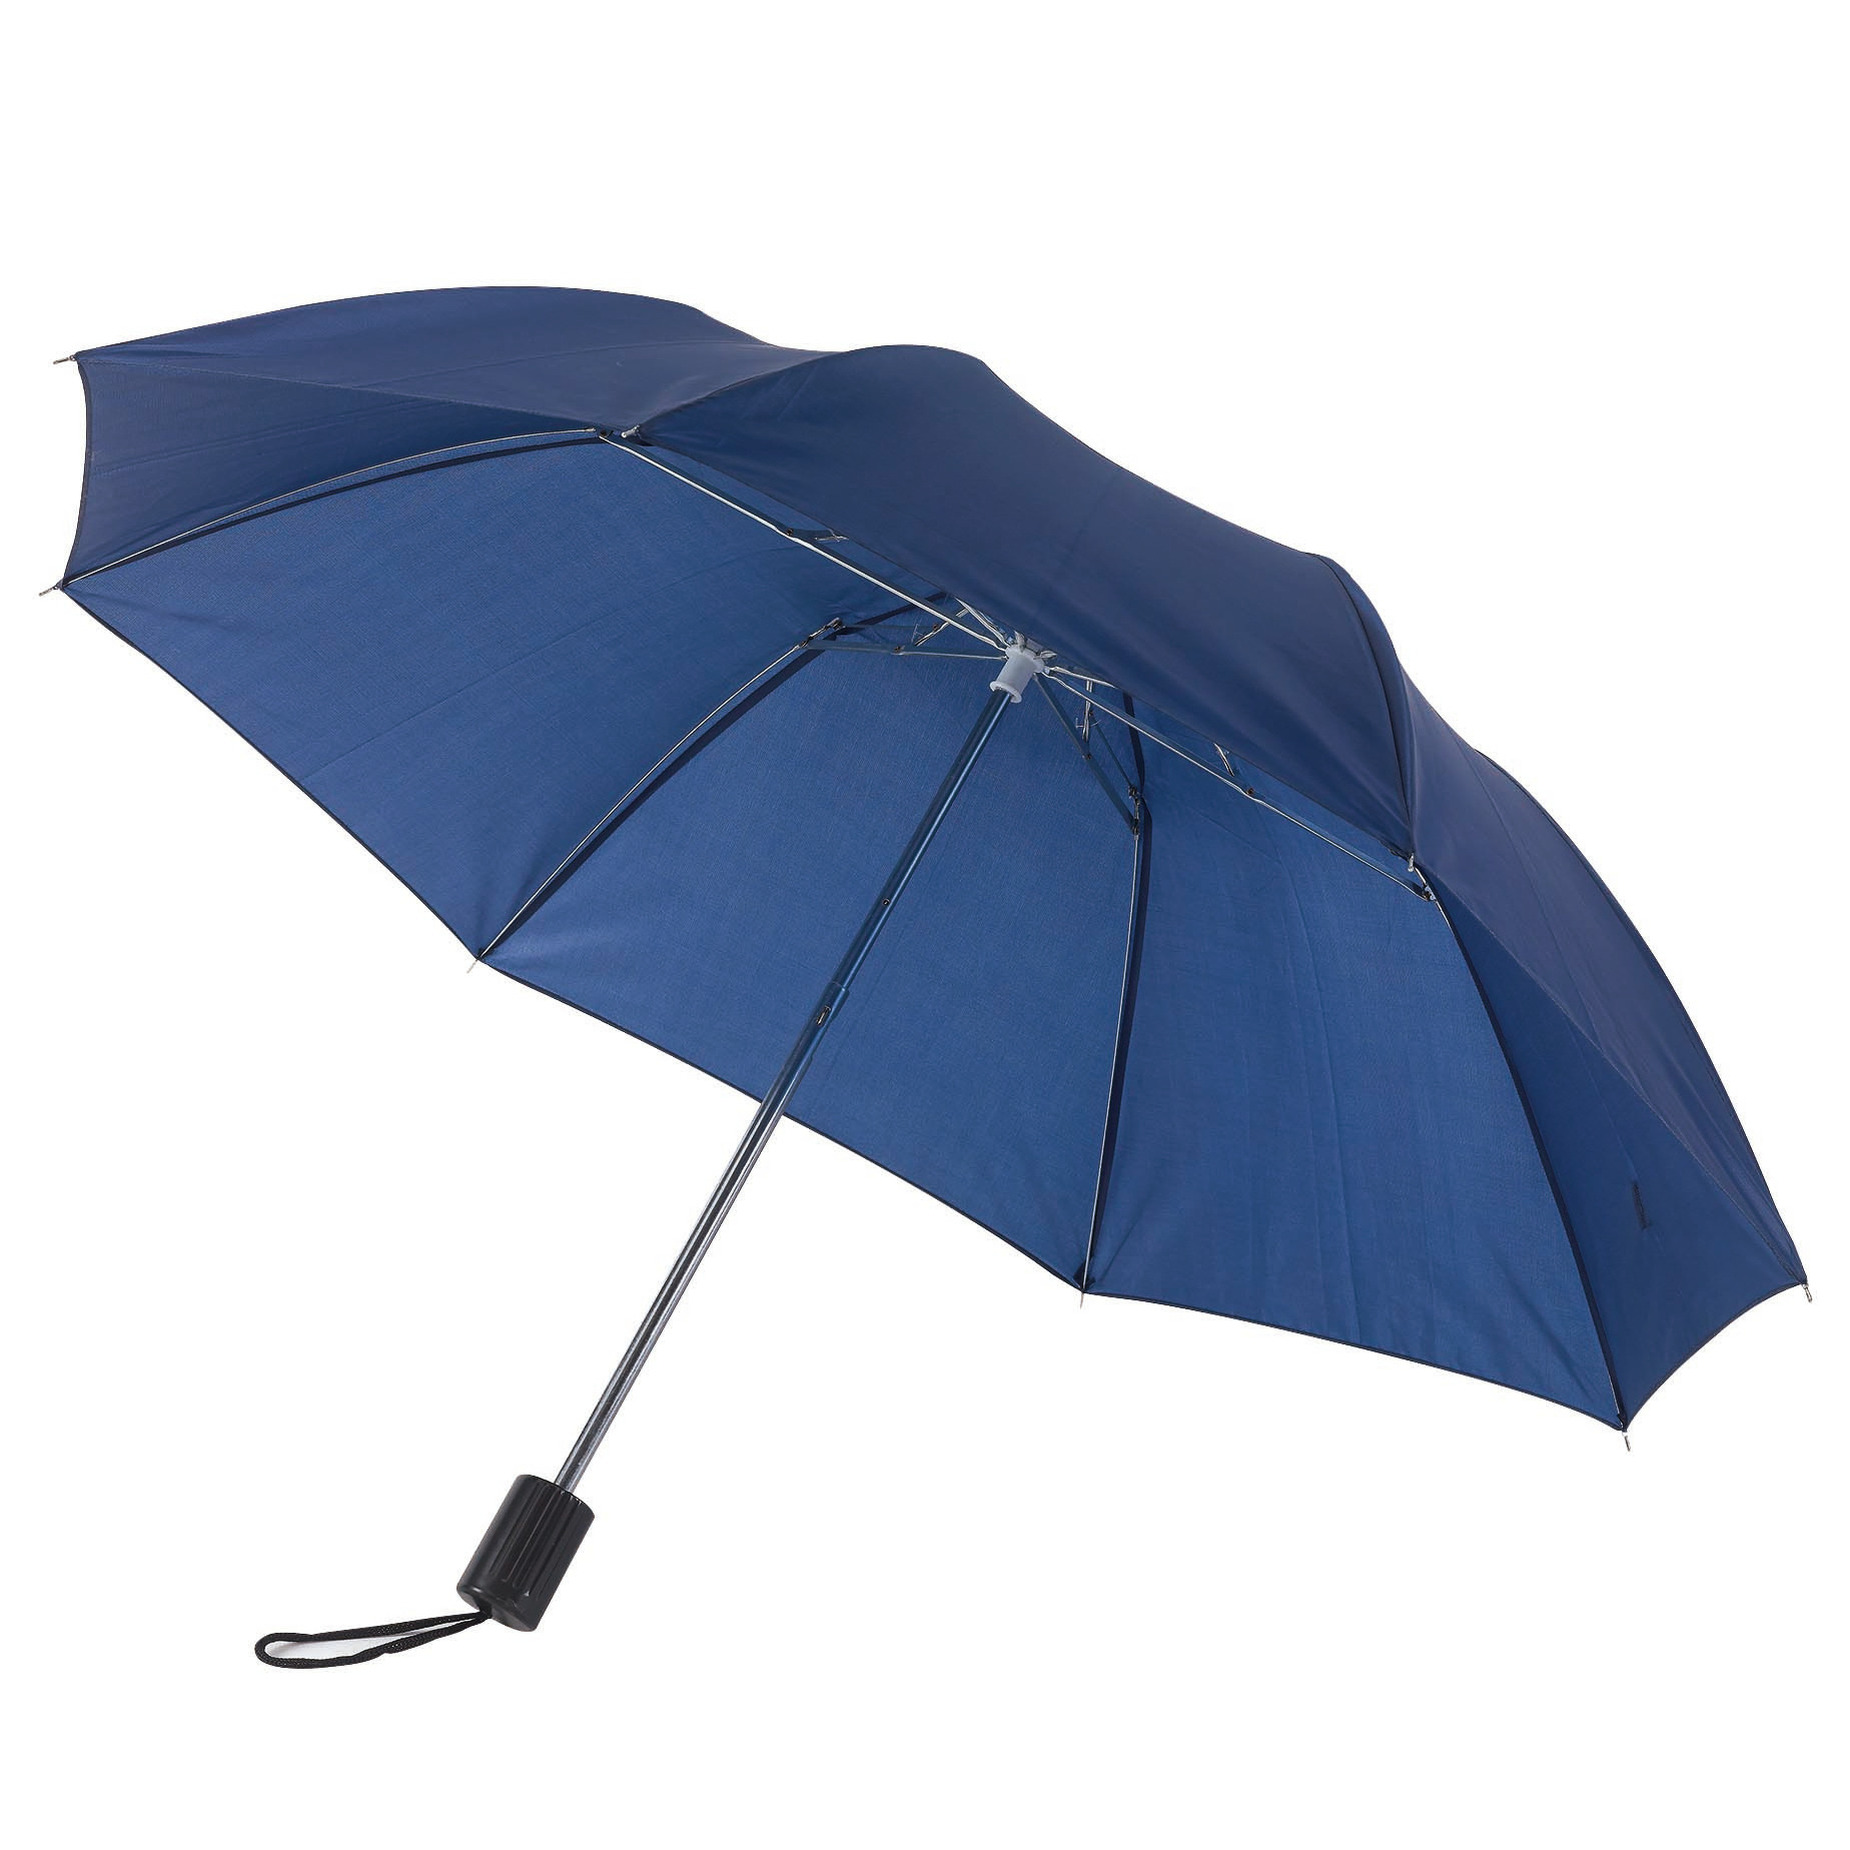 Opvouwbare paraplu navy blauw 85 cm